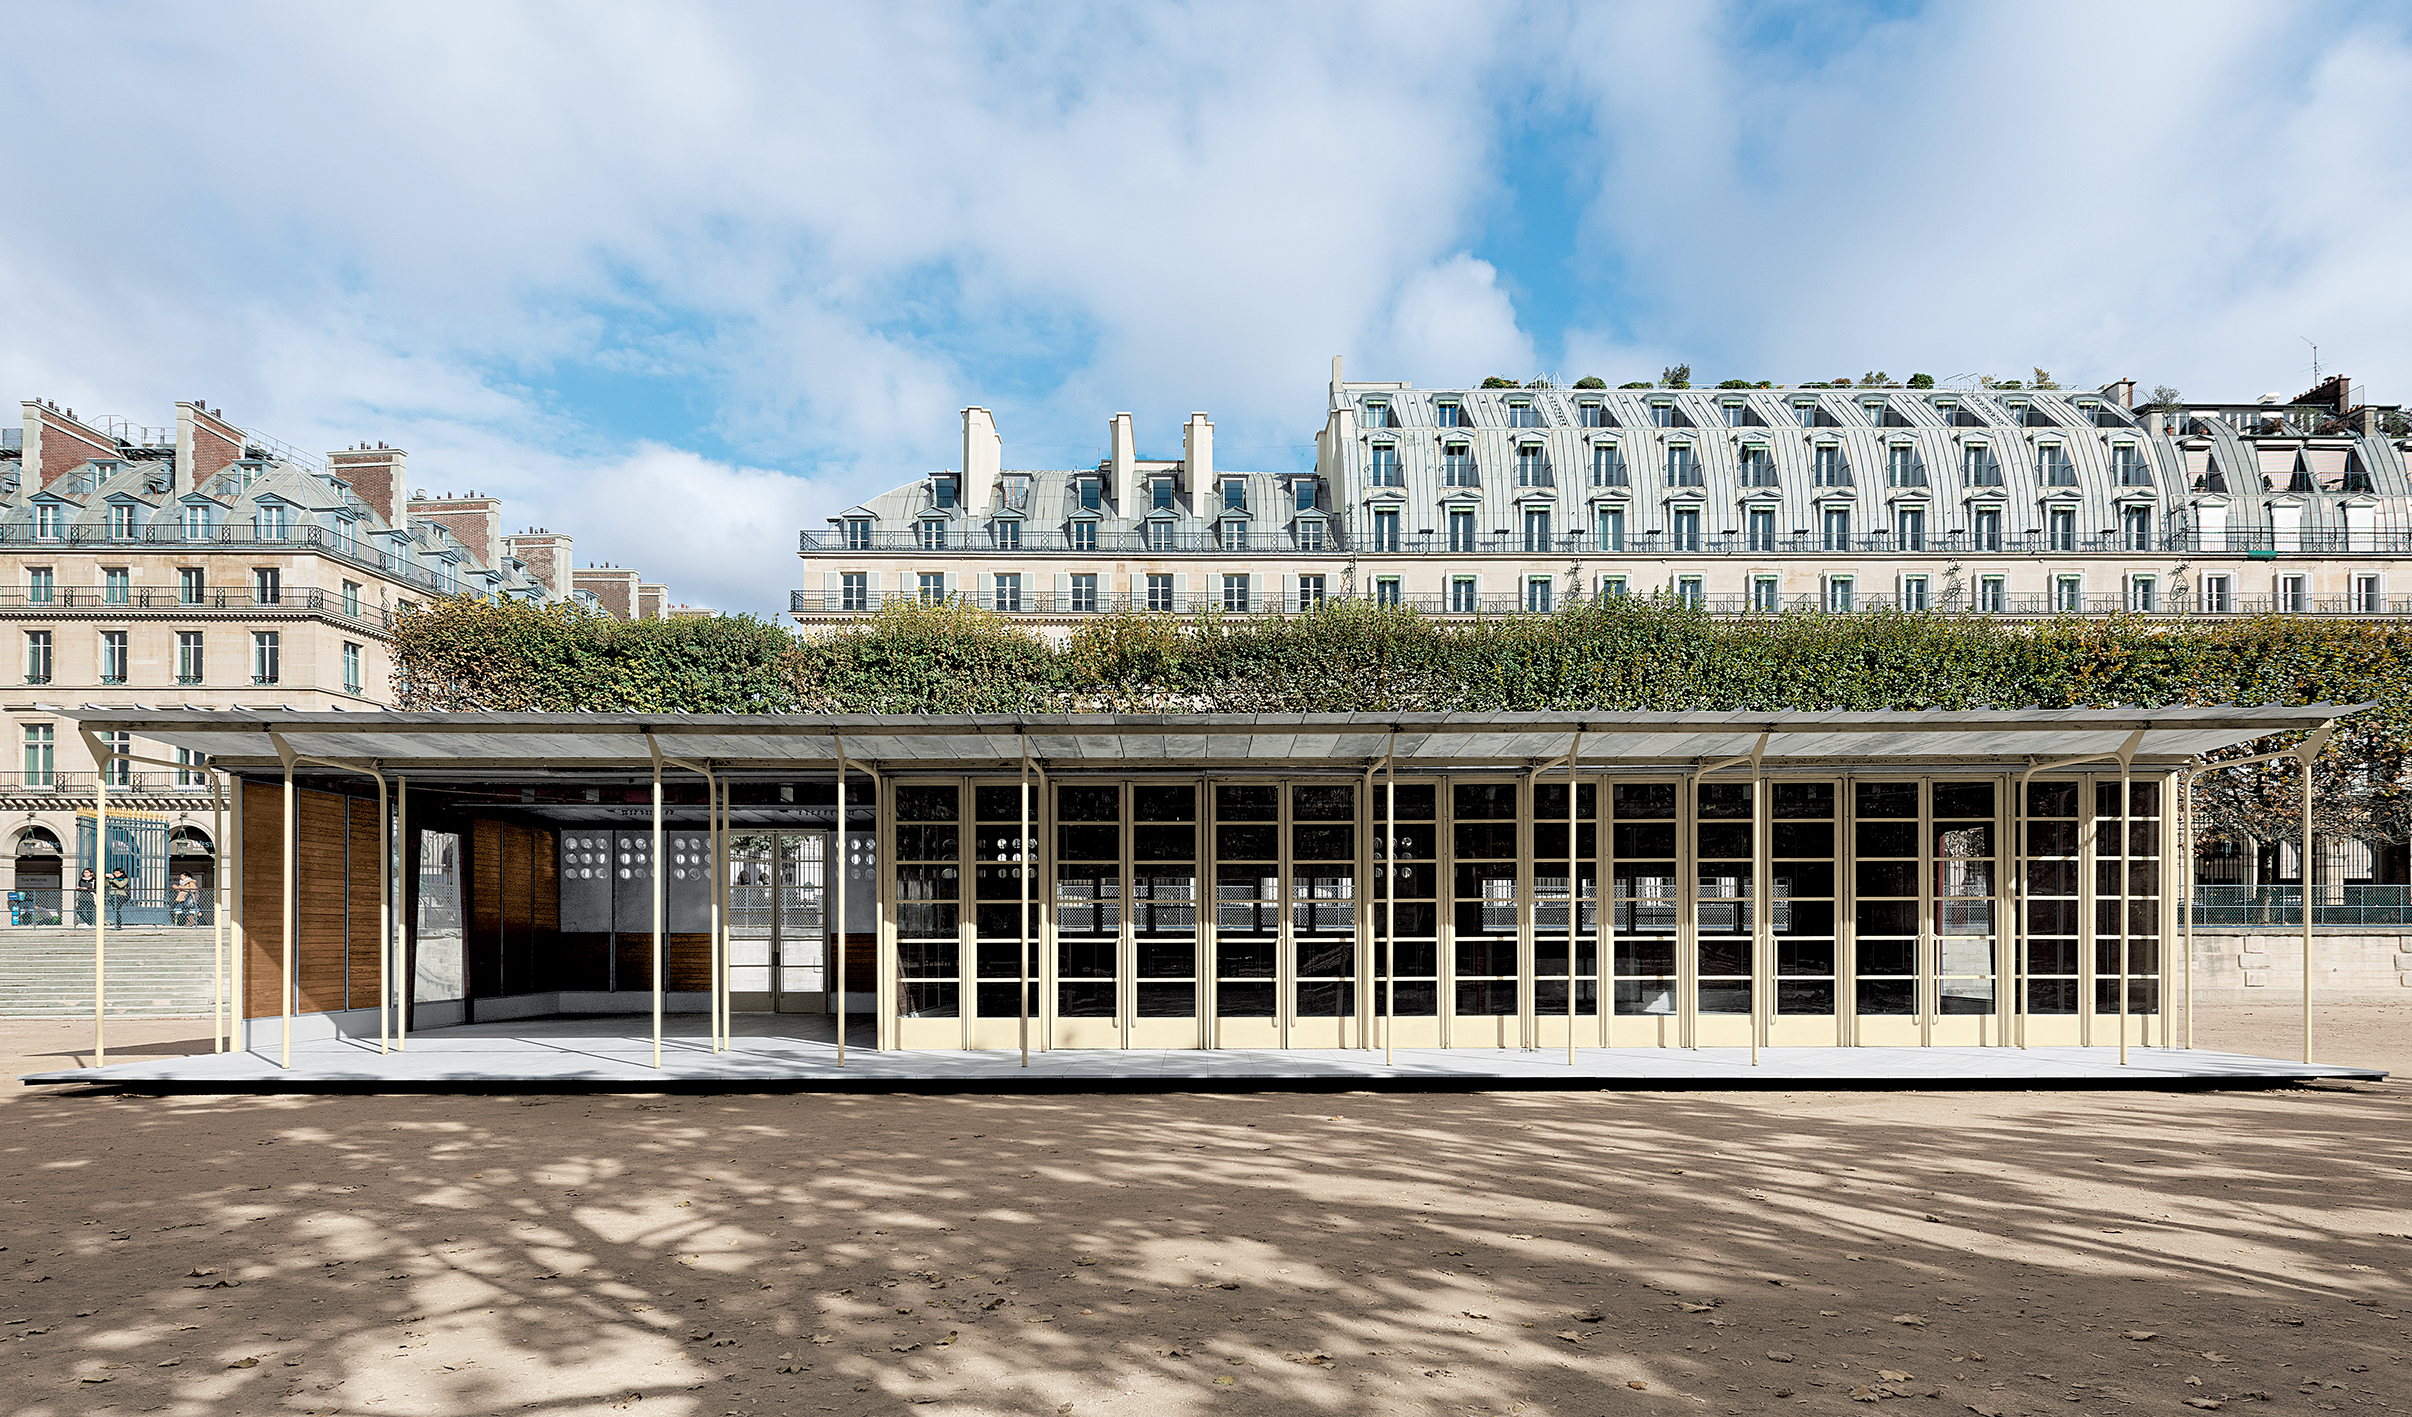 Demountable school, Bouqueval, 1950. Adaptation Jean Nouvel, reassembled at Jardin des Tuileries, Paris, 2016.